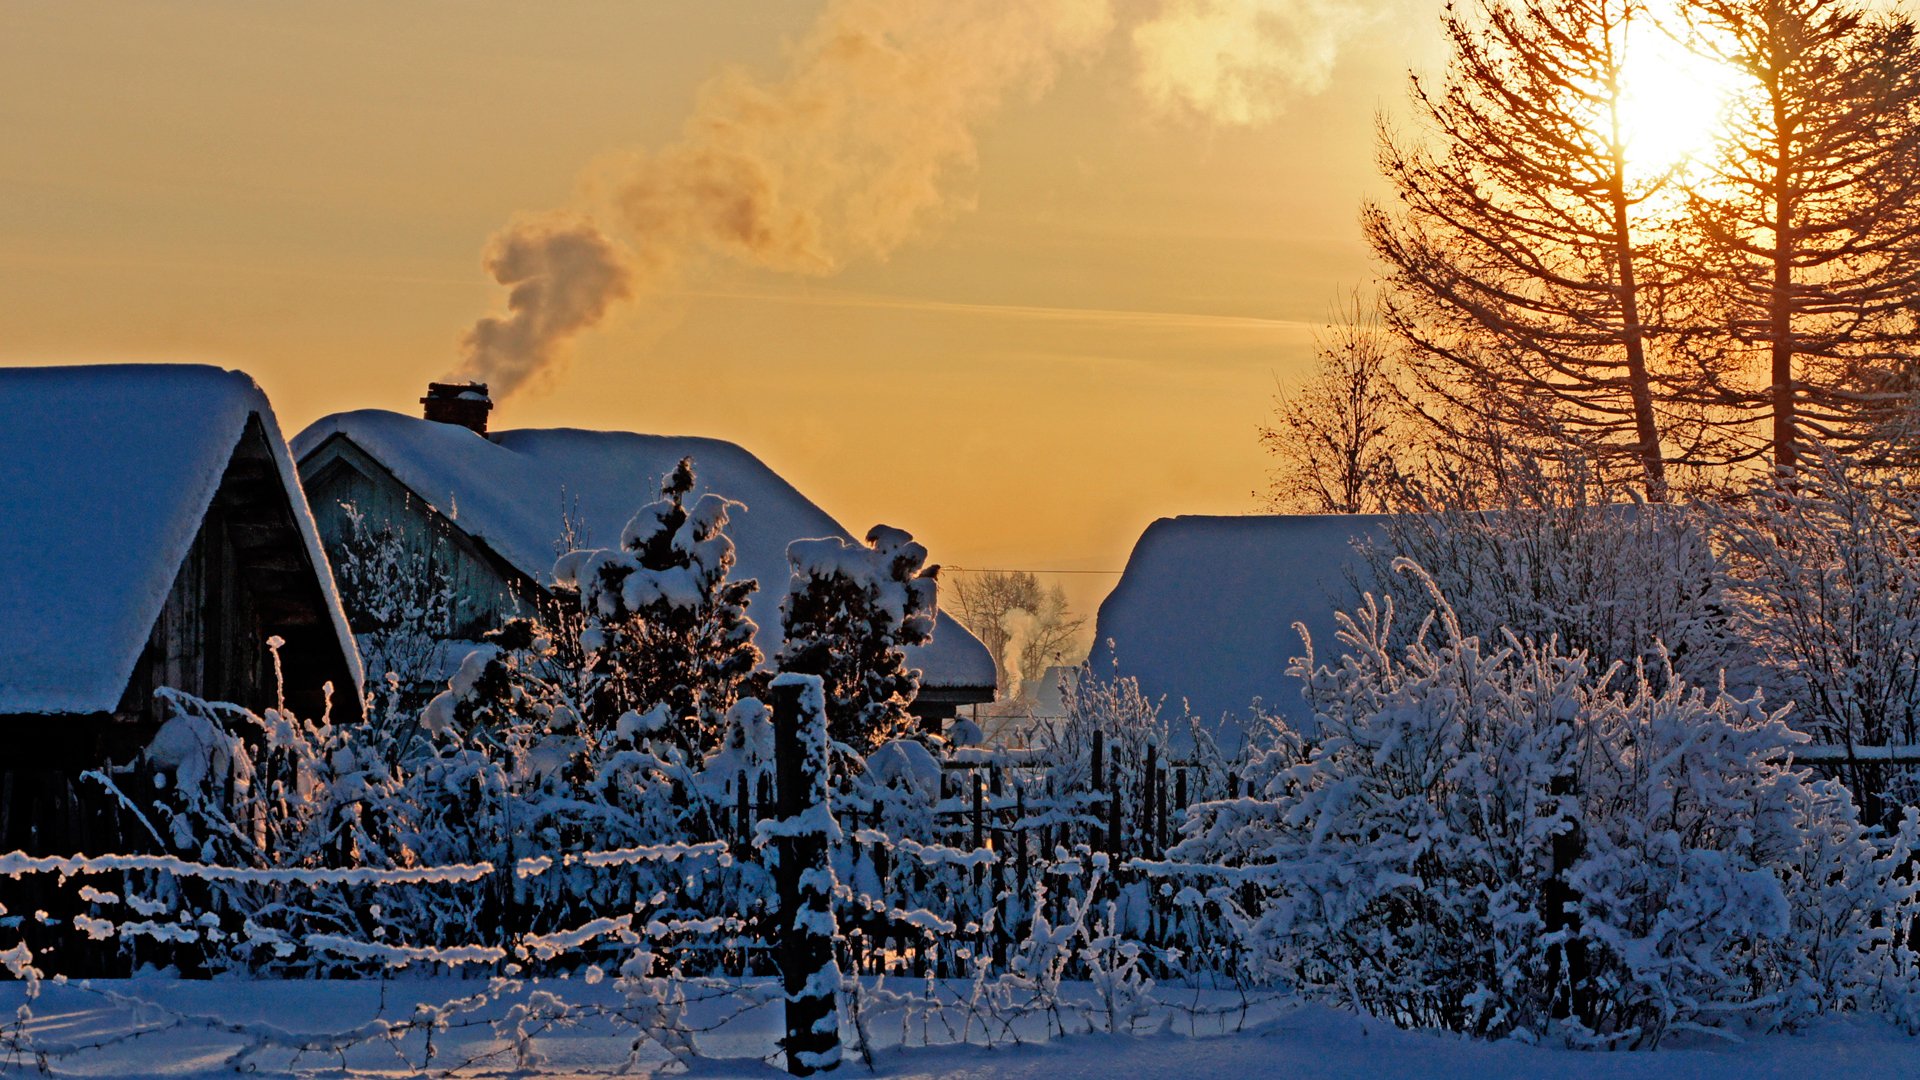 Природа зима деревня